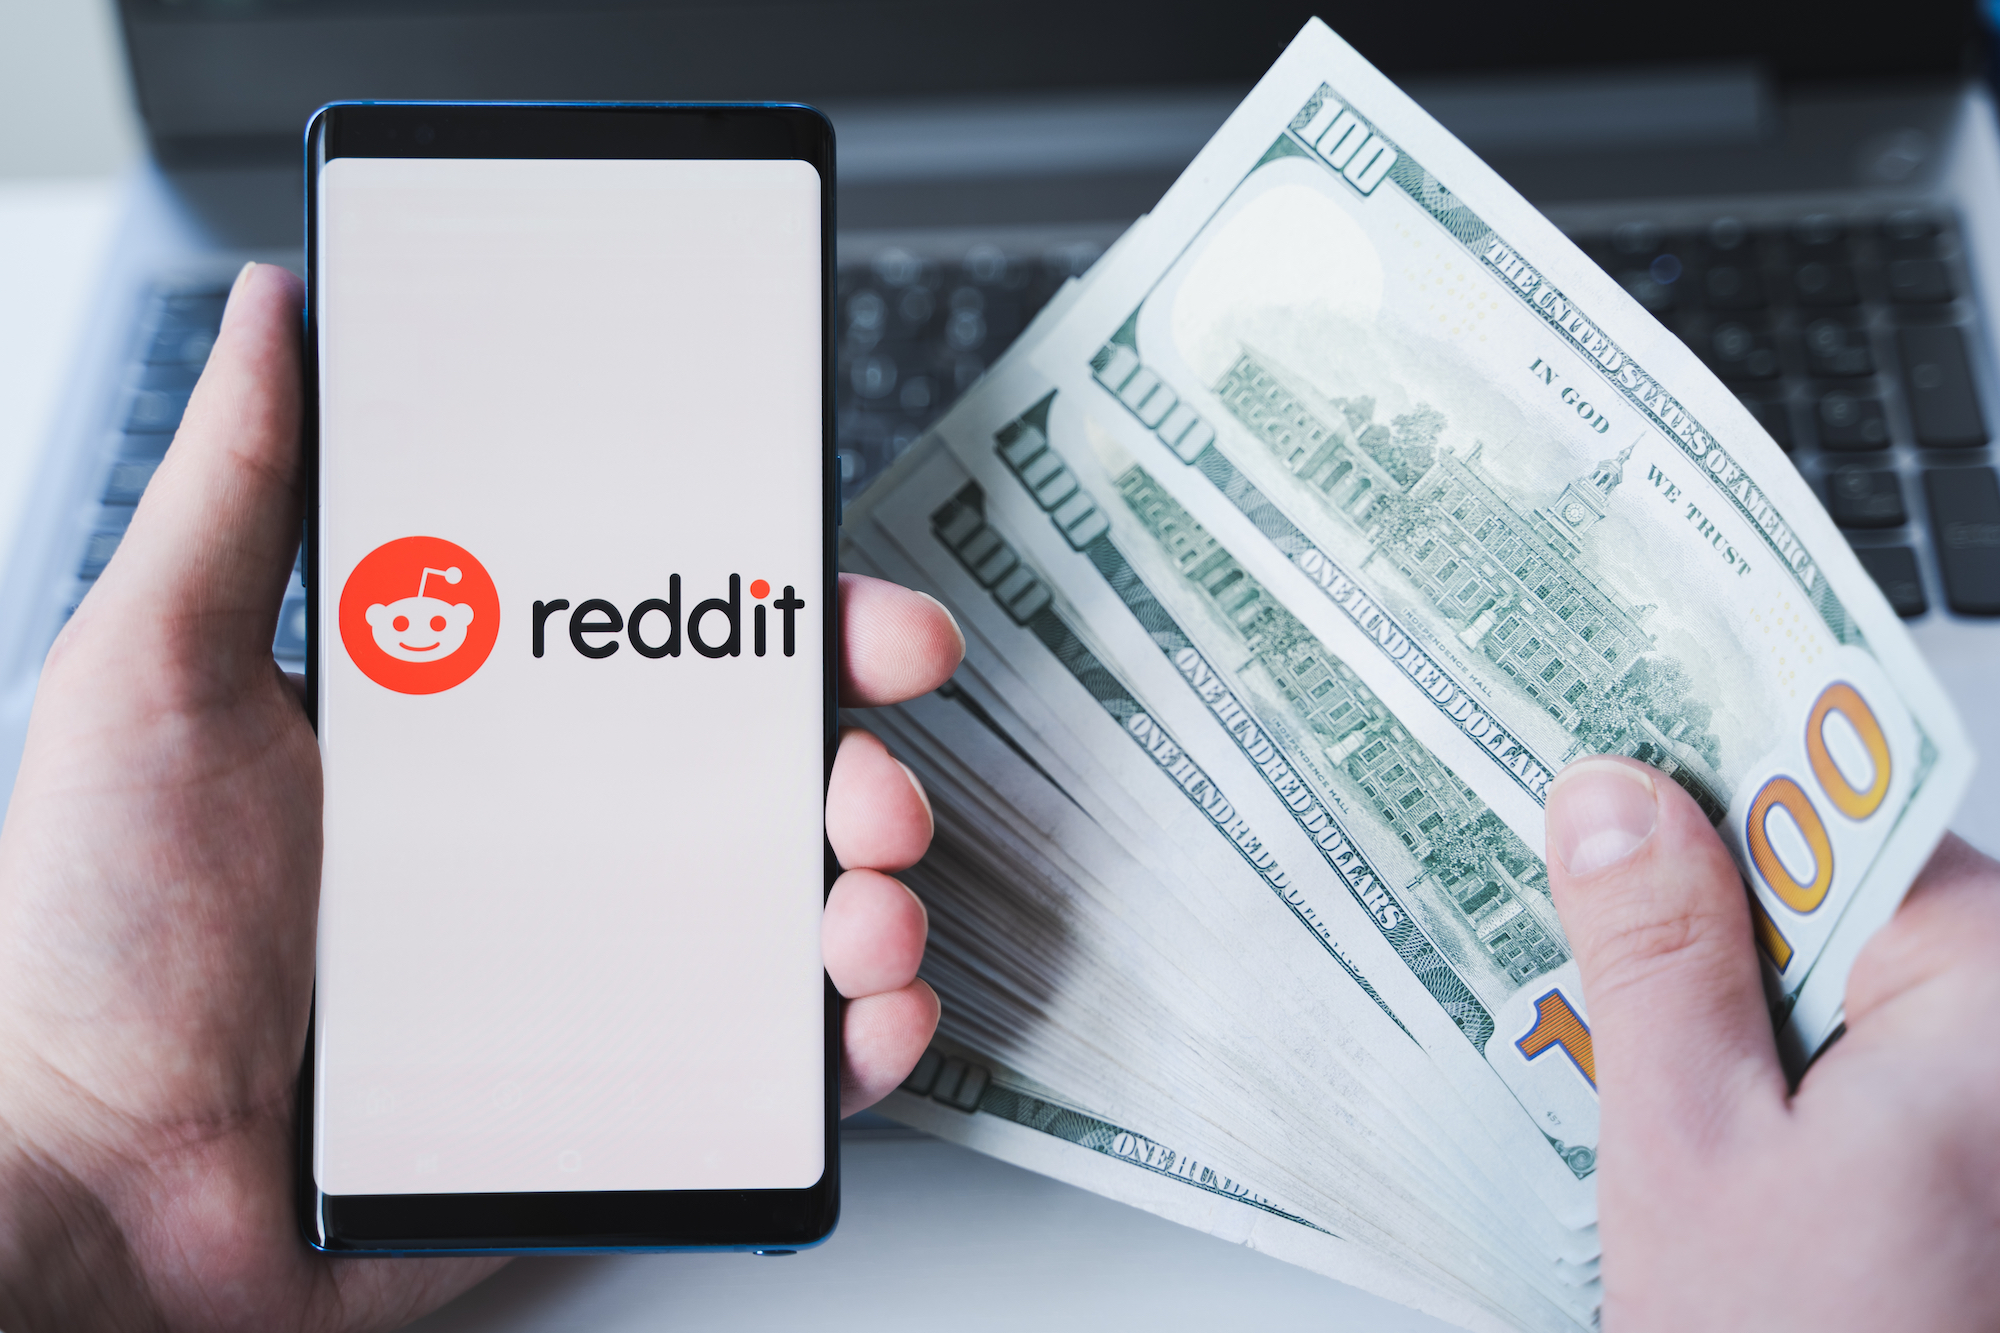 Las comunidades populares de Reddit apoyan a estos desarrolladores de aplicaciones en una protesta prolongada